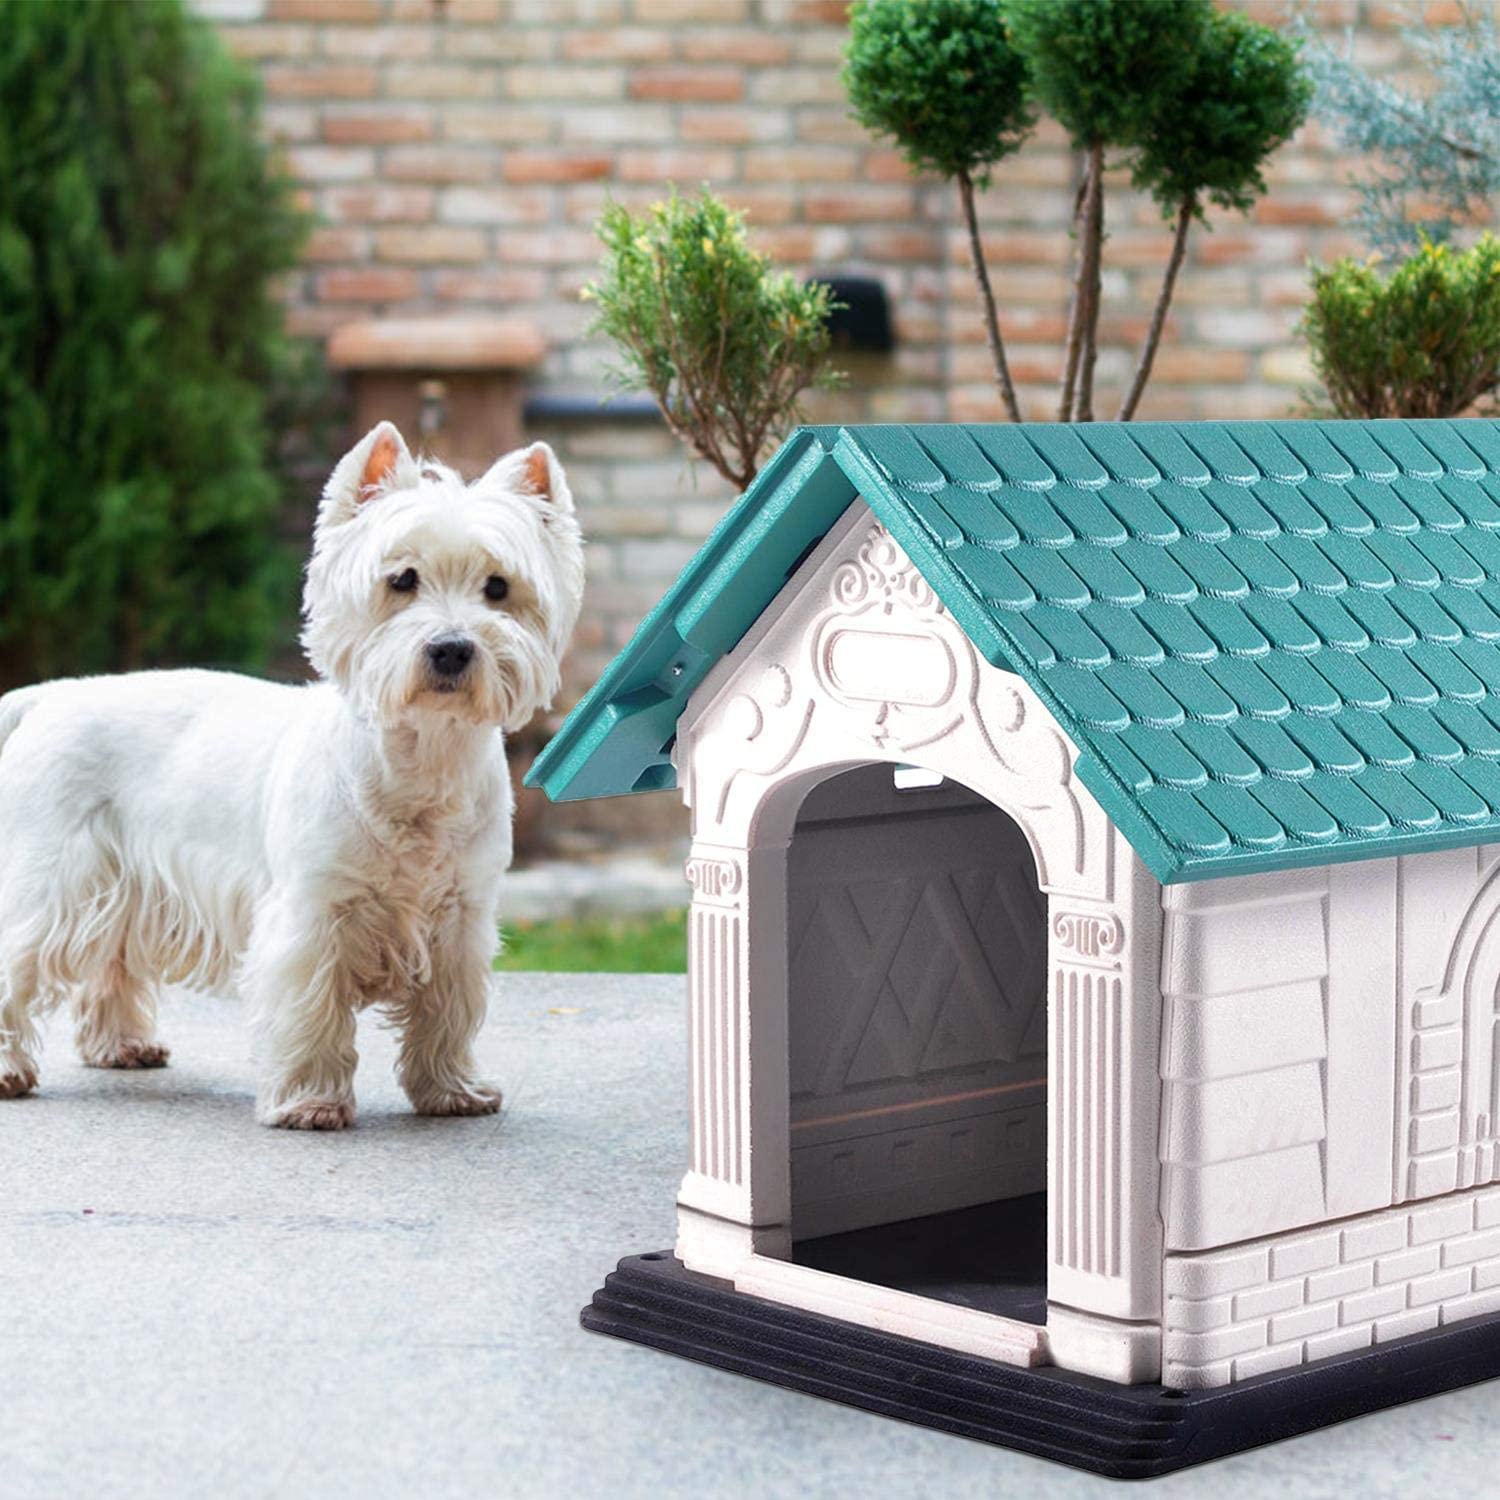  Nobleza - Caseta para Perros de Polipropileno Impermeable con tejado a Dos Aguas para Interior y Exterior. Blanco y Verde 